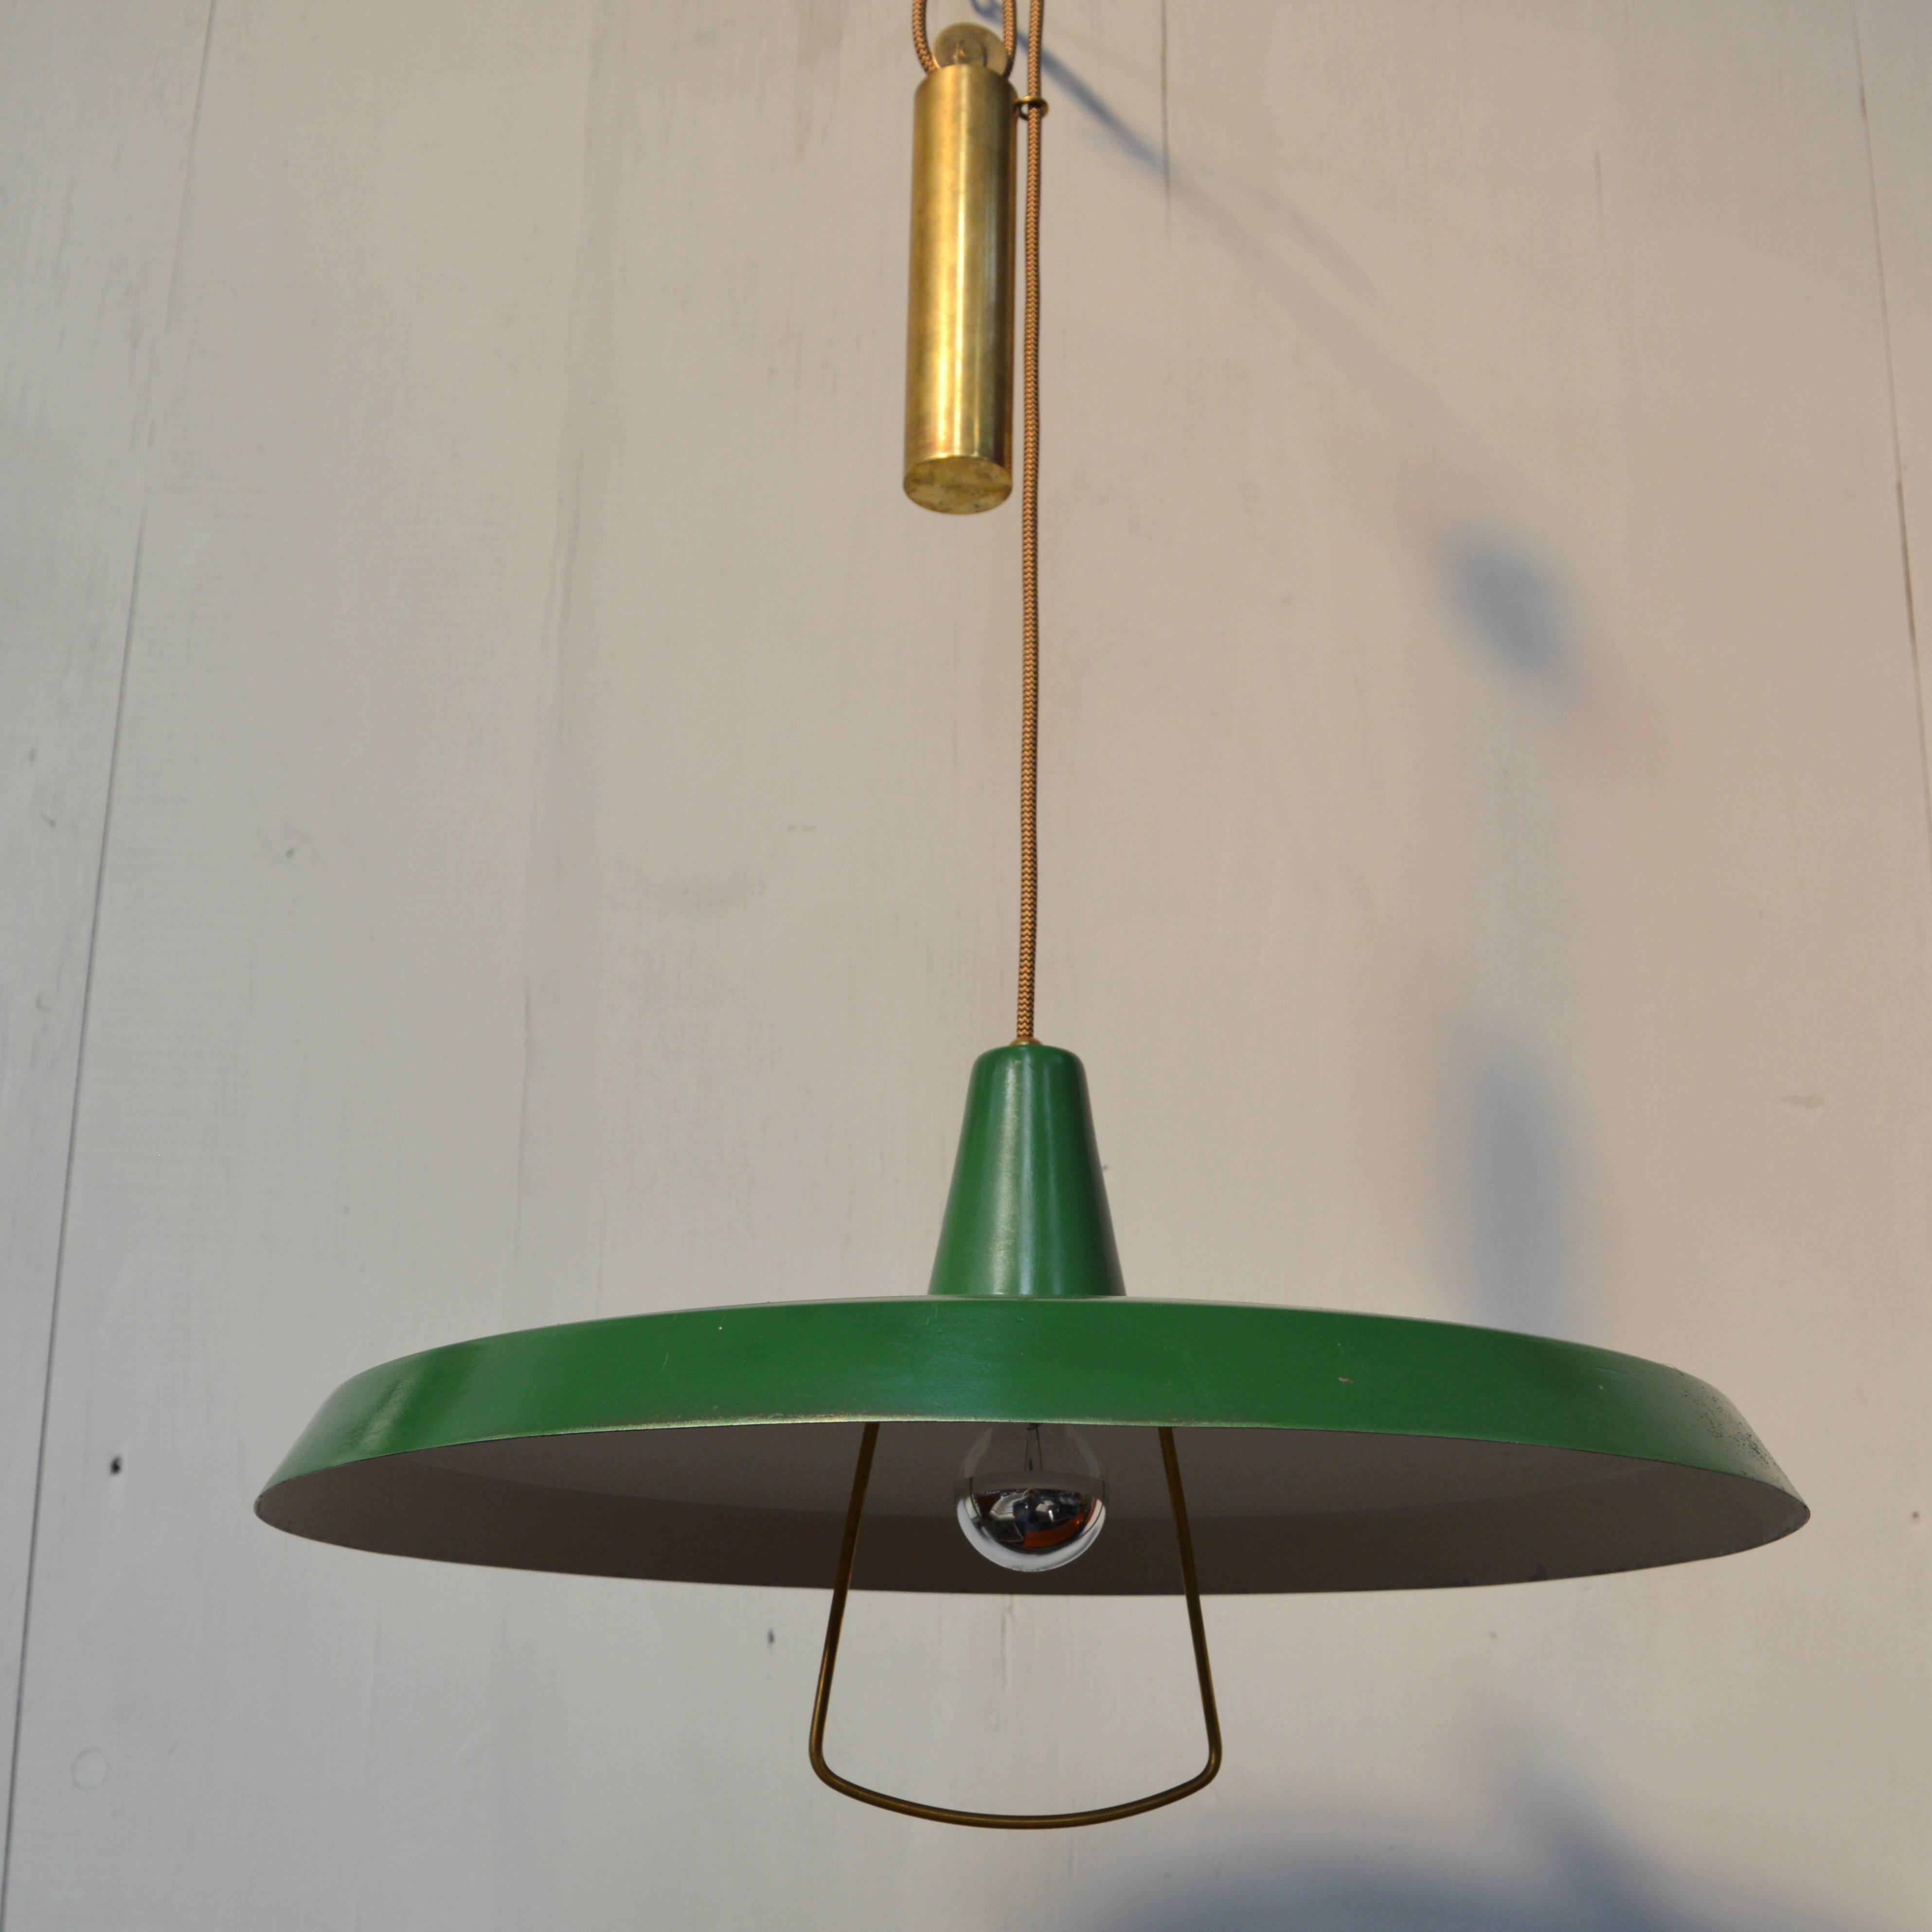 Enameled Stilnovo Pendant Counter Balance Ceiling Lamp, Italy, 1950s